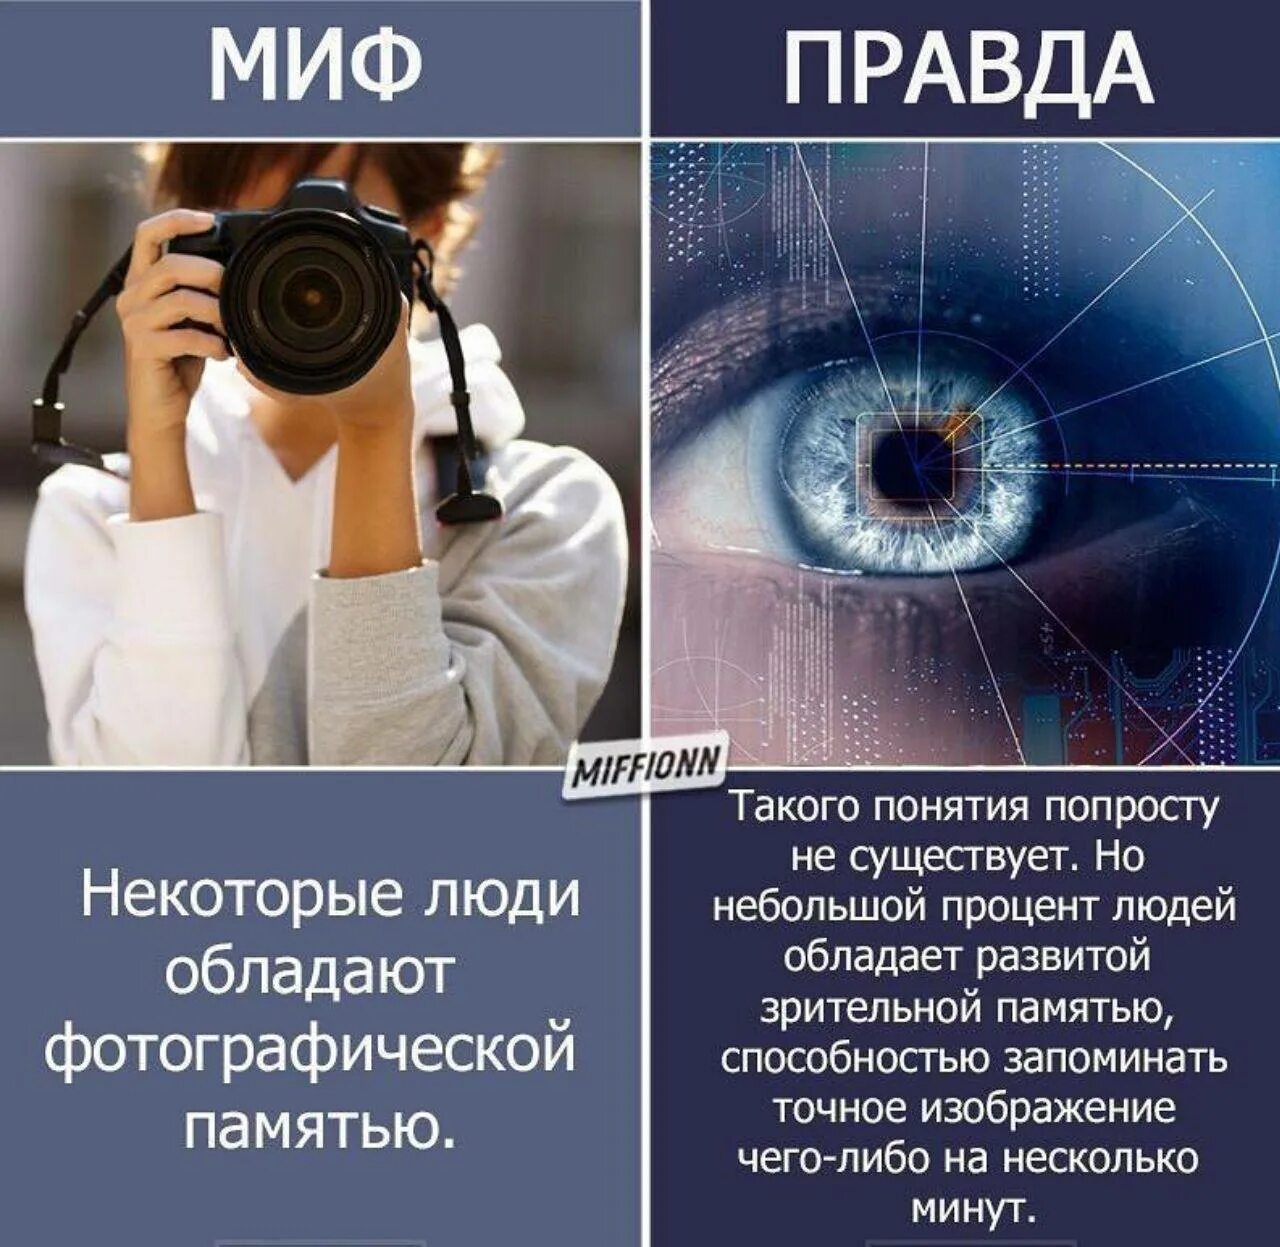 Человек с фотографической памятью. Люди с фотографической памятью. Фотографичная память. Фотографическая память миф. % Людей обладающих фотографической памятью.